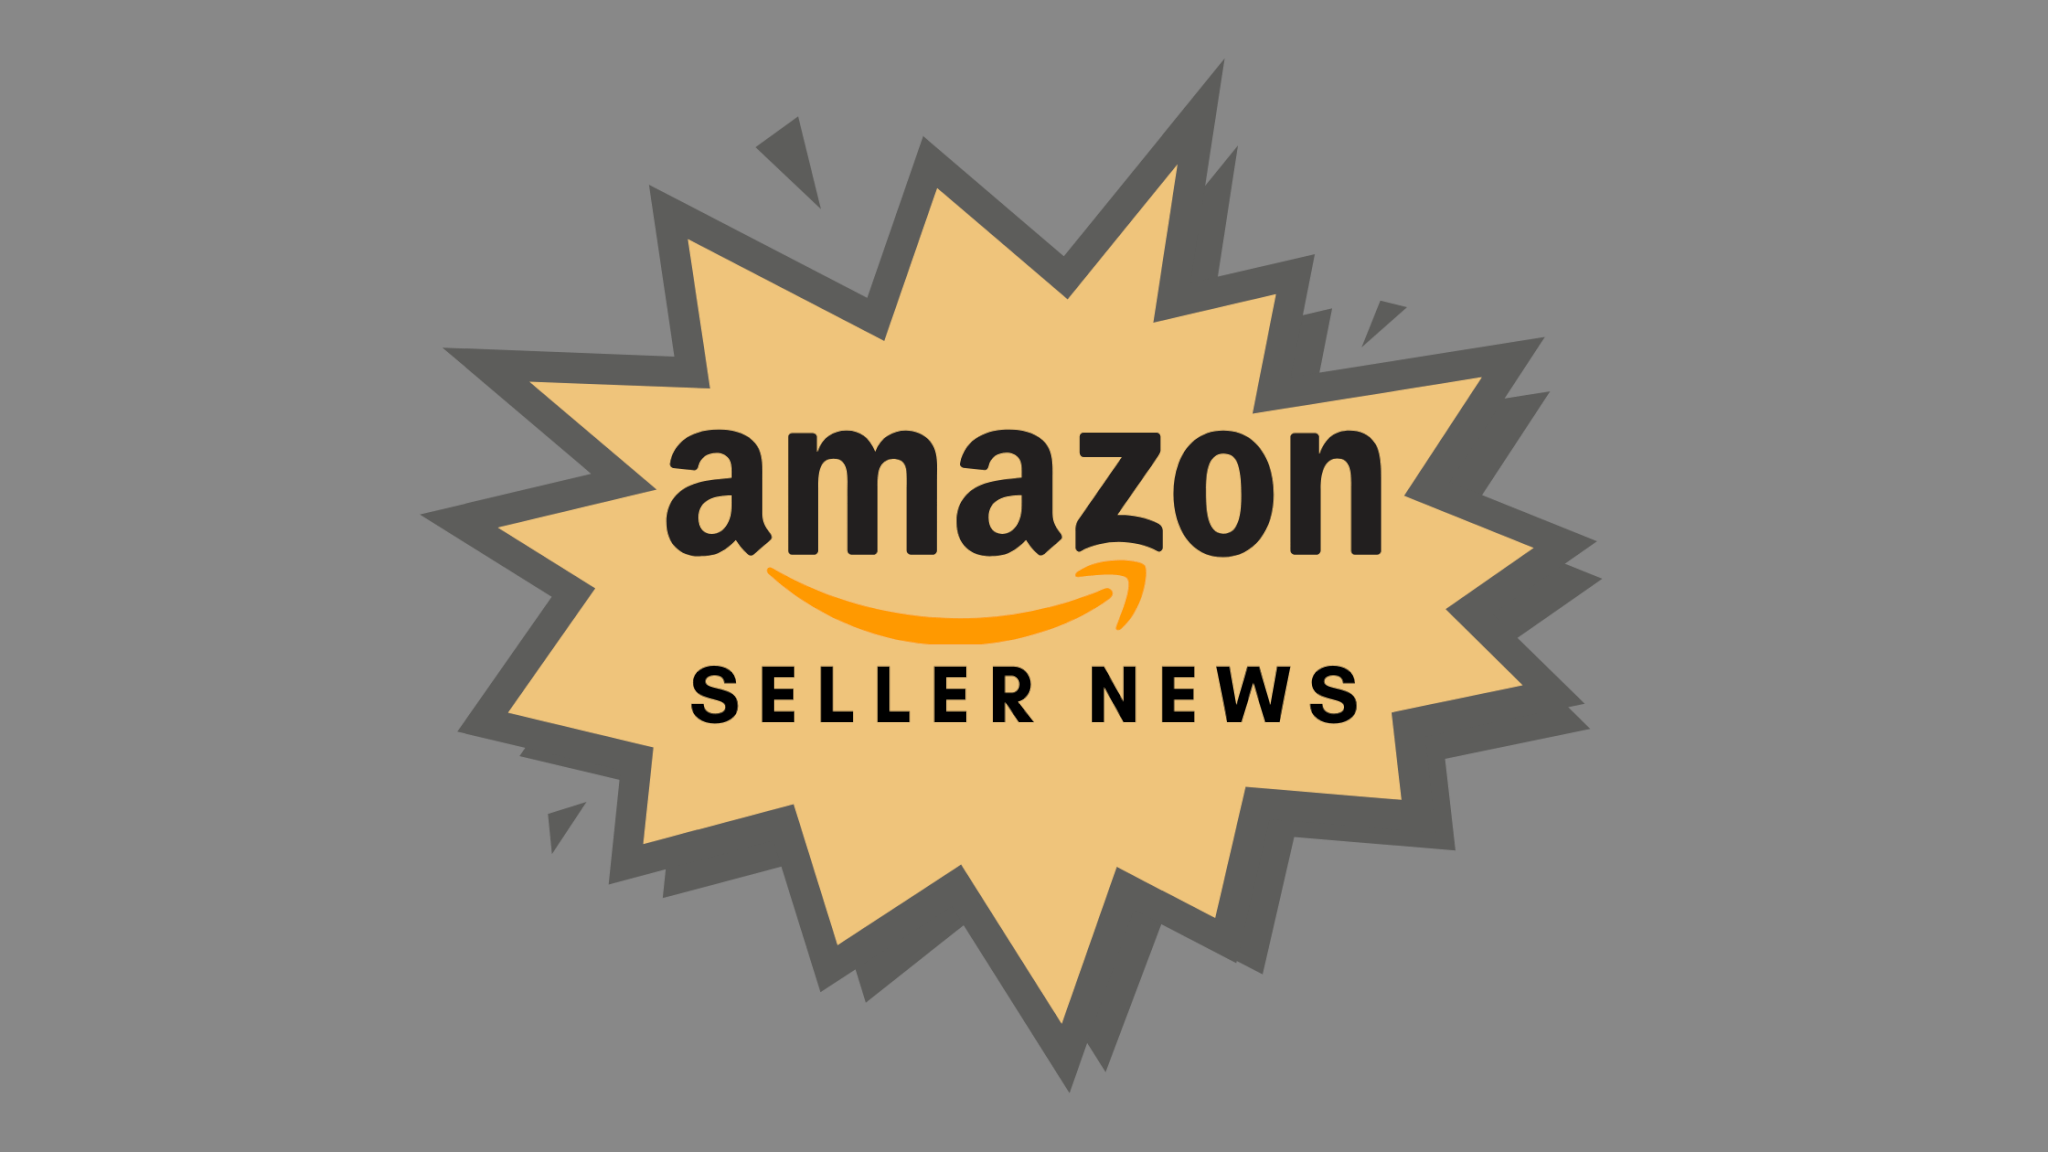 Amazon Seller News